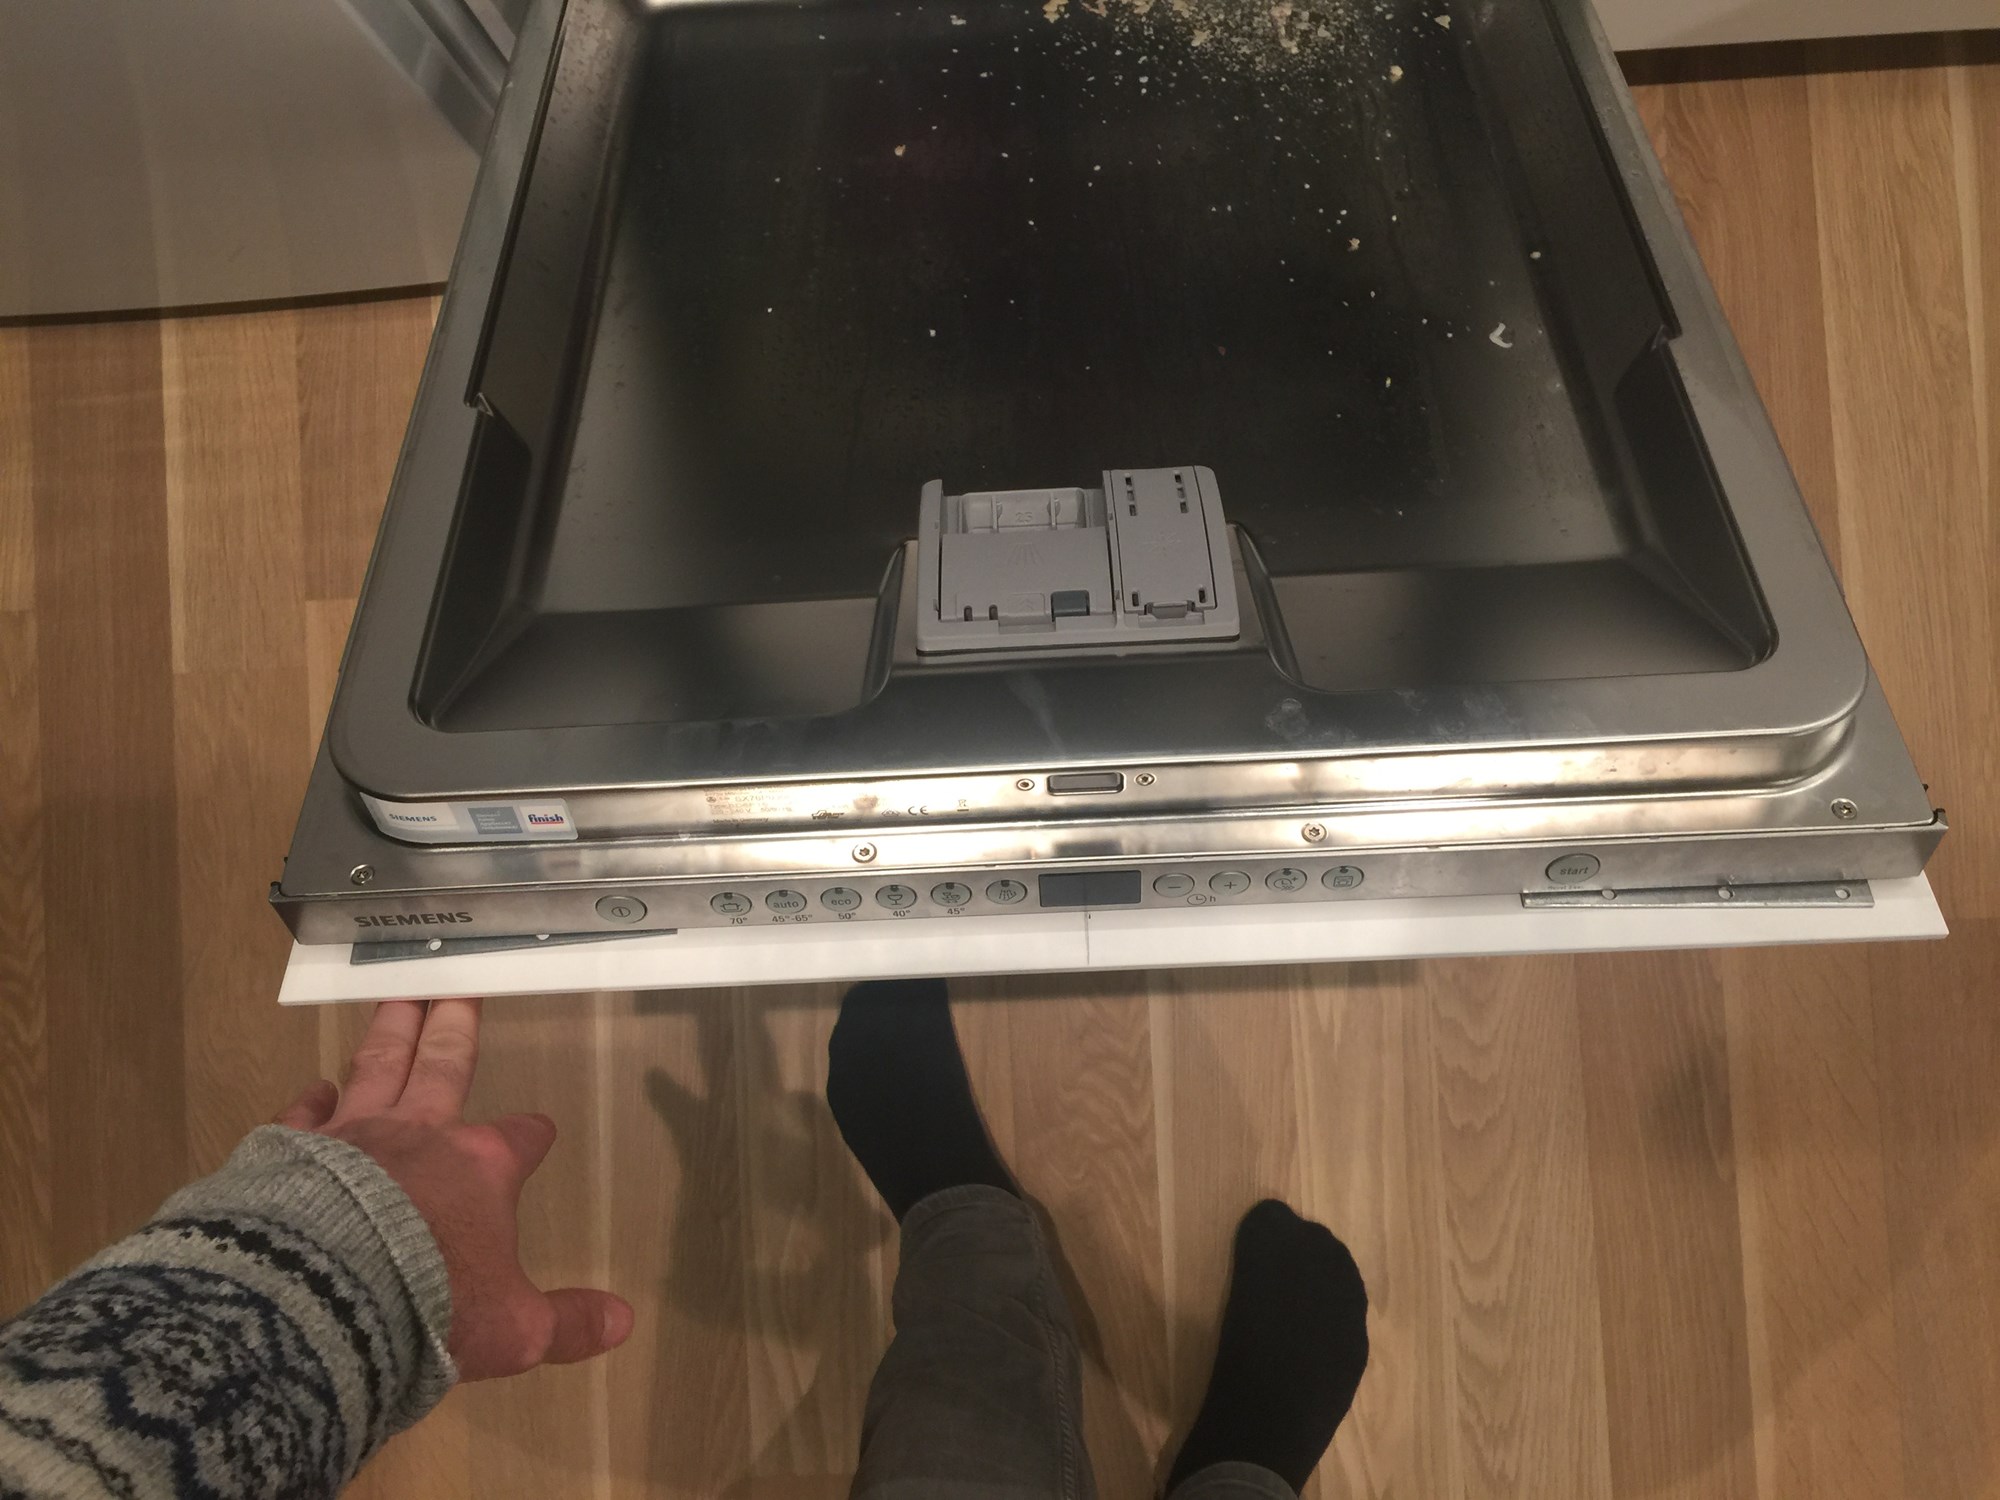 Bosch oppvaskmaskin passer ikke i den nye kjøkkenserien til IKEA. -  - petter87